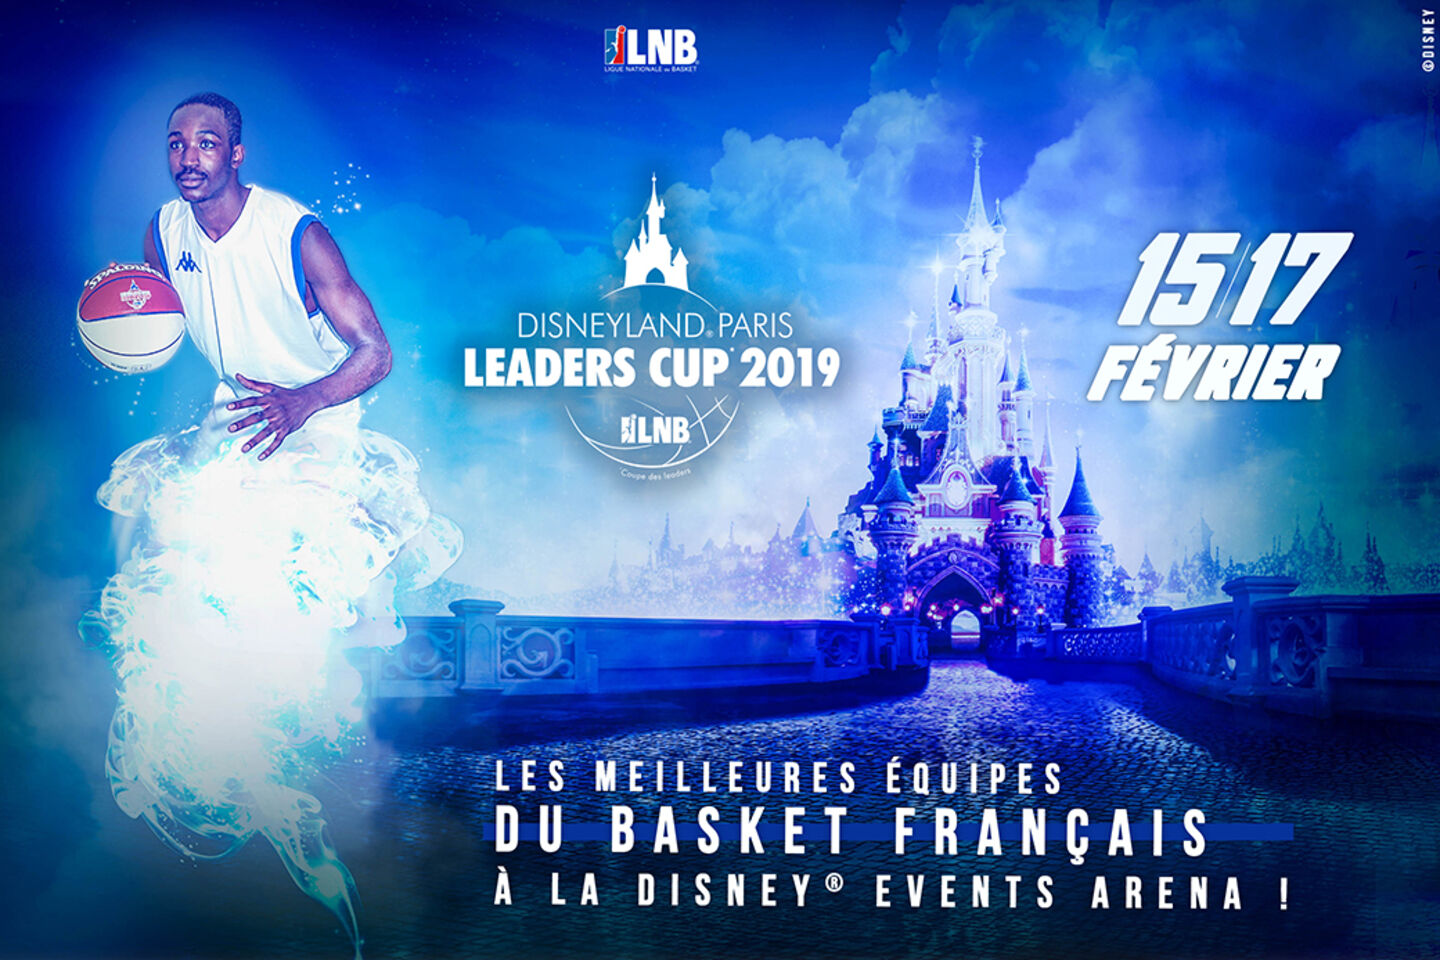 Disneyland Paris leaders cup LNB 2019